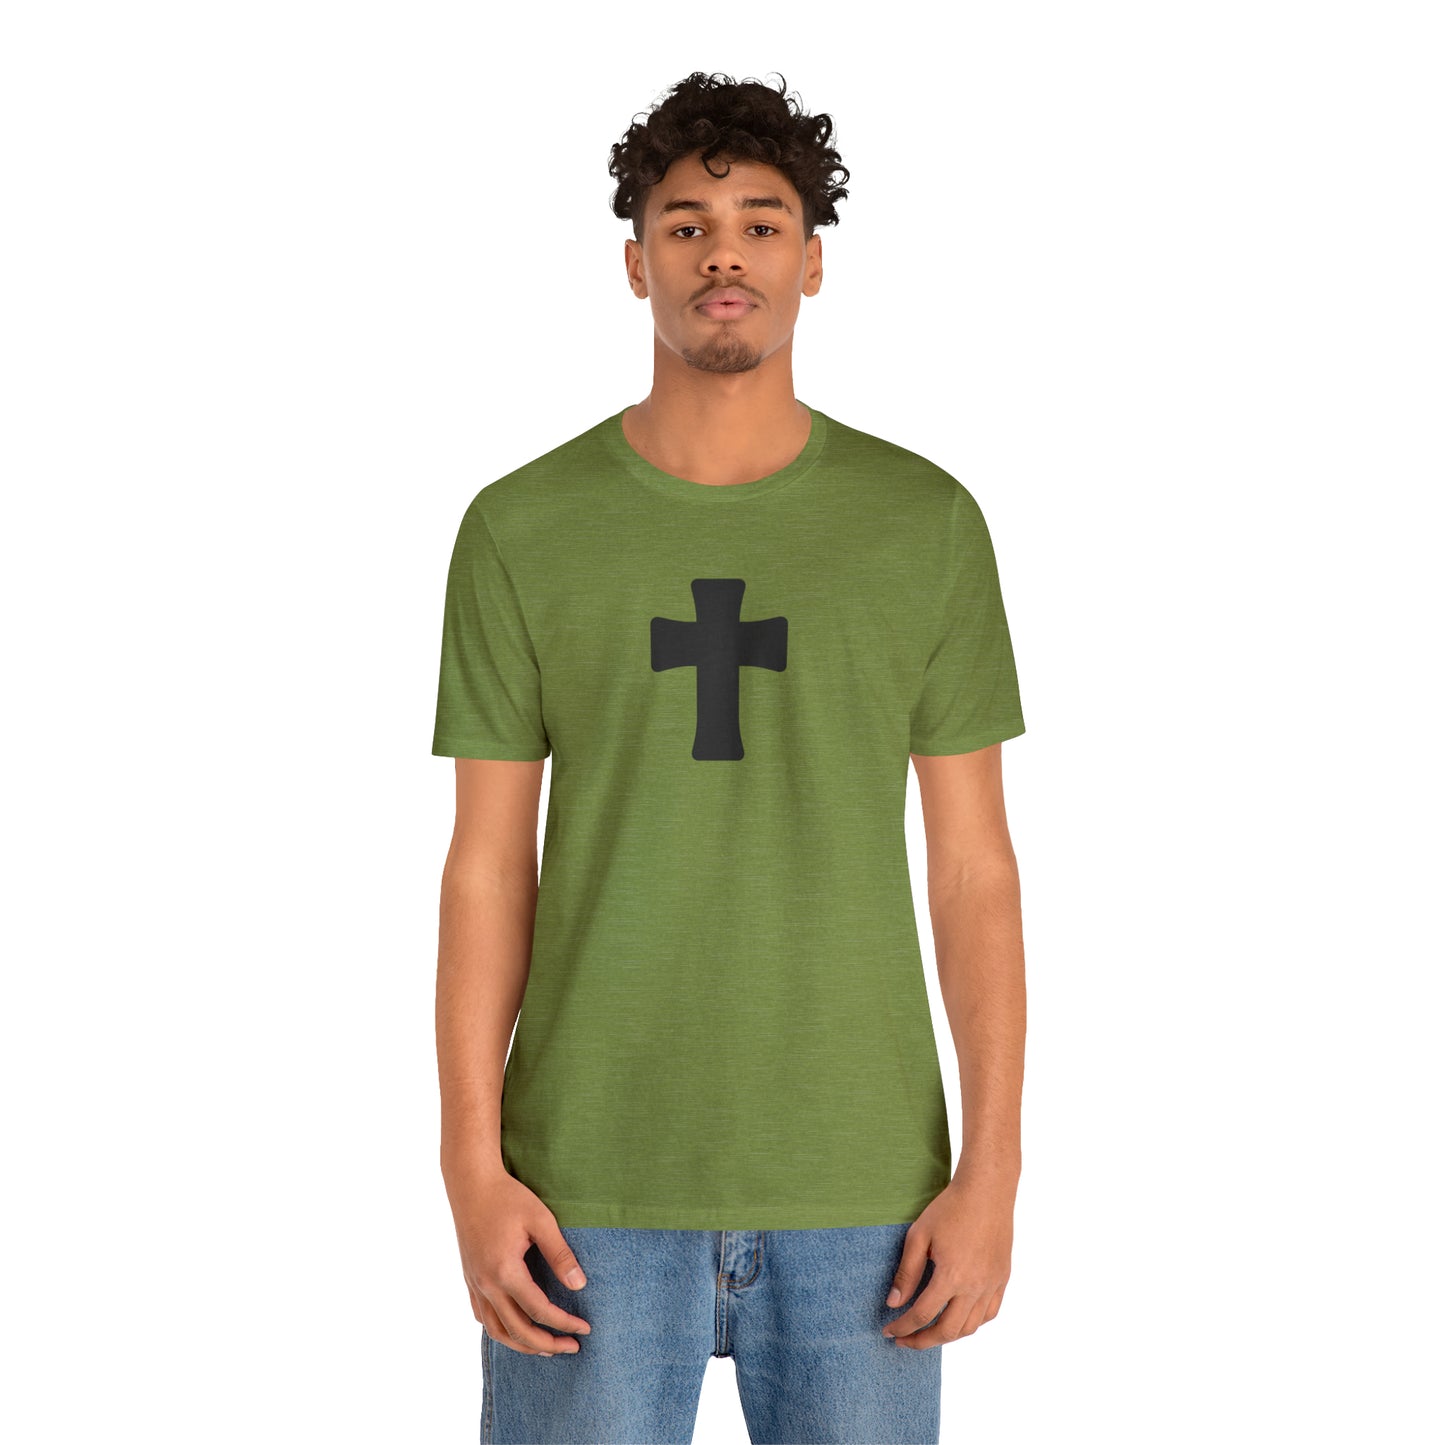 T-Shirt, Christian Cross - A Thousand Elsewhere